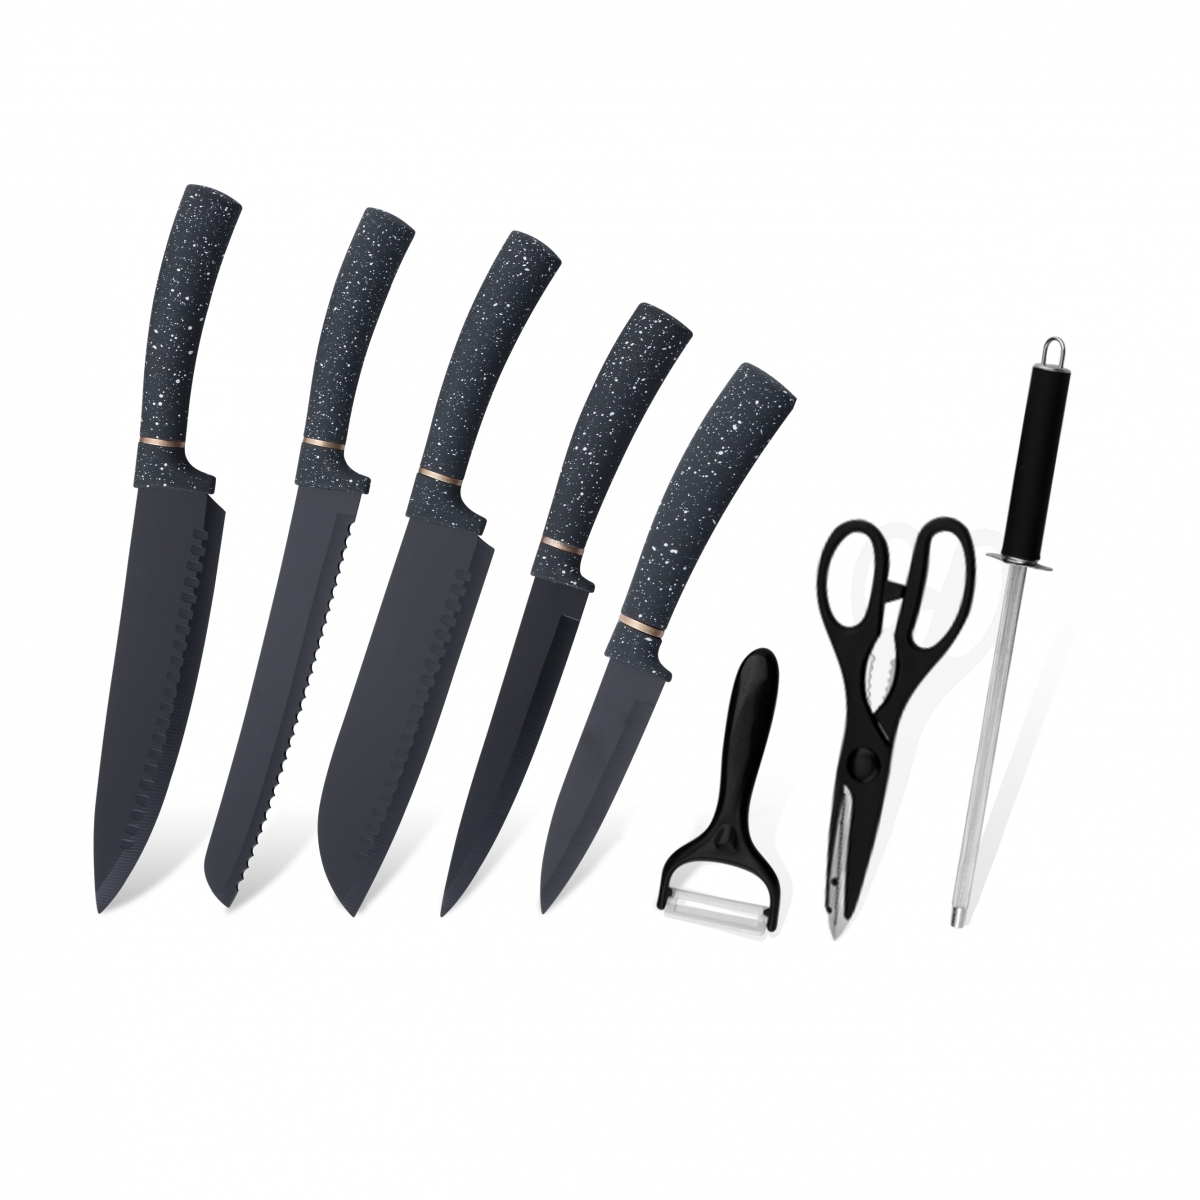 K125-Alta Qualidade Aço Inoxidável Chef Faca Faca de Cozinha Set-ZX | faca de cozinha, ferramentas de cozinha, molde de bolo de silicone, tábua de cortar, conjuntos de ferramentas de cozimento, faca de chef, faca de bife, faca de fatiador, faca utilitária, faca de aparar, bloco de faca, suporte de faca, faca Santoku, faca infantil, faca de plástico, pintura antiaderente Faca, faca colorida, faca de aço inoxidável, abridor de latas, abridor de garrafas, coador de chá, ralador, batedor de ovos, ferramenta de cozinha de nylon, ferramenta de cozinha de silicone, cortador de biscoitos, conjunto de facas de cozinha, apontador de facas, descascador, faca de bolo, faca de queijo, pizza Faca, espátula de silicone, colher de silicone, pinça de comida, faca forjada, tesoura de cozinha, facas de cozimento de bolo, facas de cozinha infantil, faca de escultura